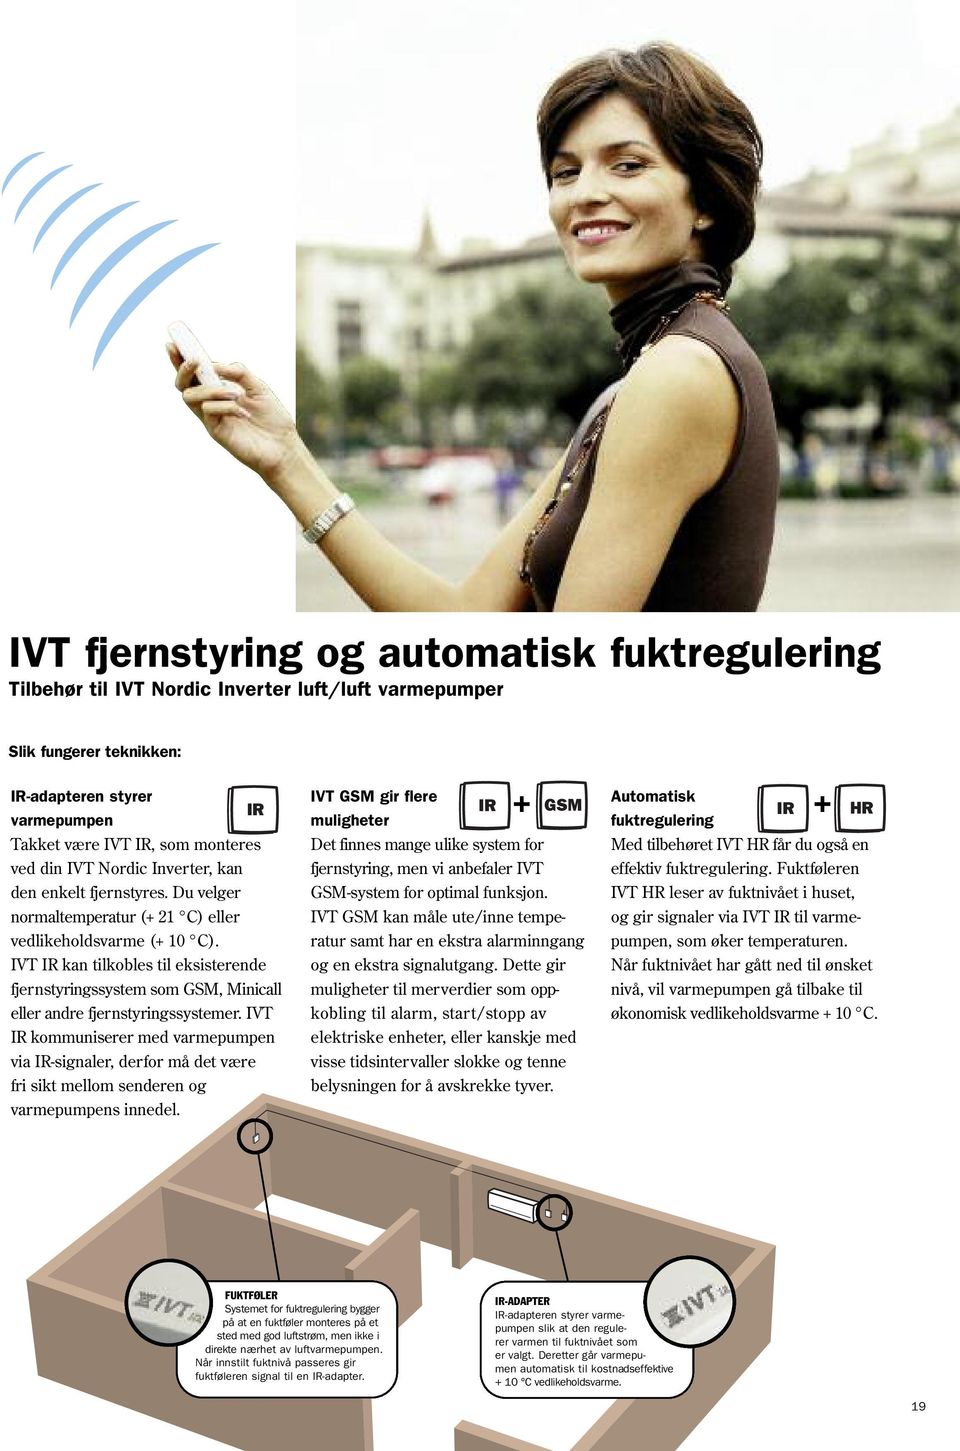 IVT IR kan tilkobles til eksisterende fjernstyringssystem som GSM, Minicall eller andre fjernstyringssystemer.